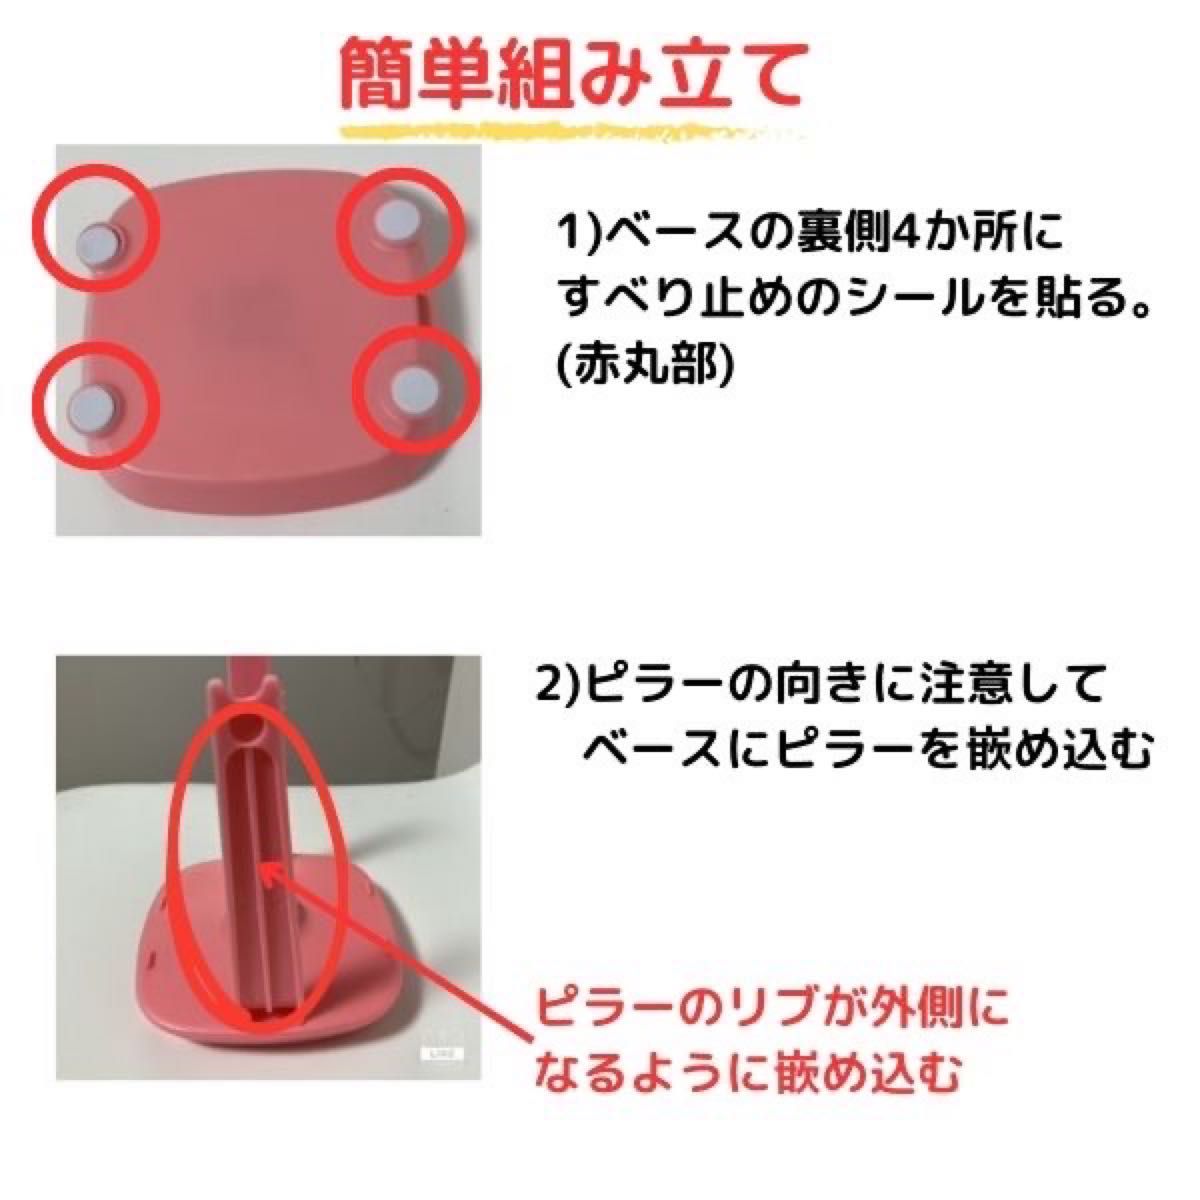 スマホスインガー ピンク 自動振り子ツール スマホスイング USB式 自動振り子 歩数稼ぎ ドラクエウォーク ポケモンGO